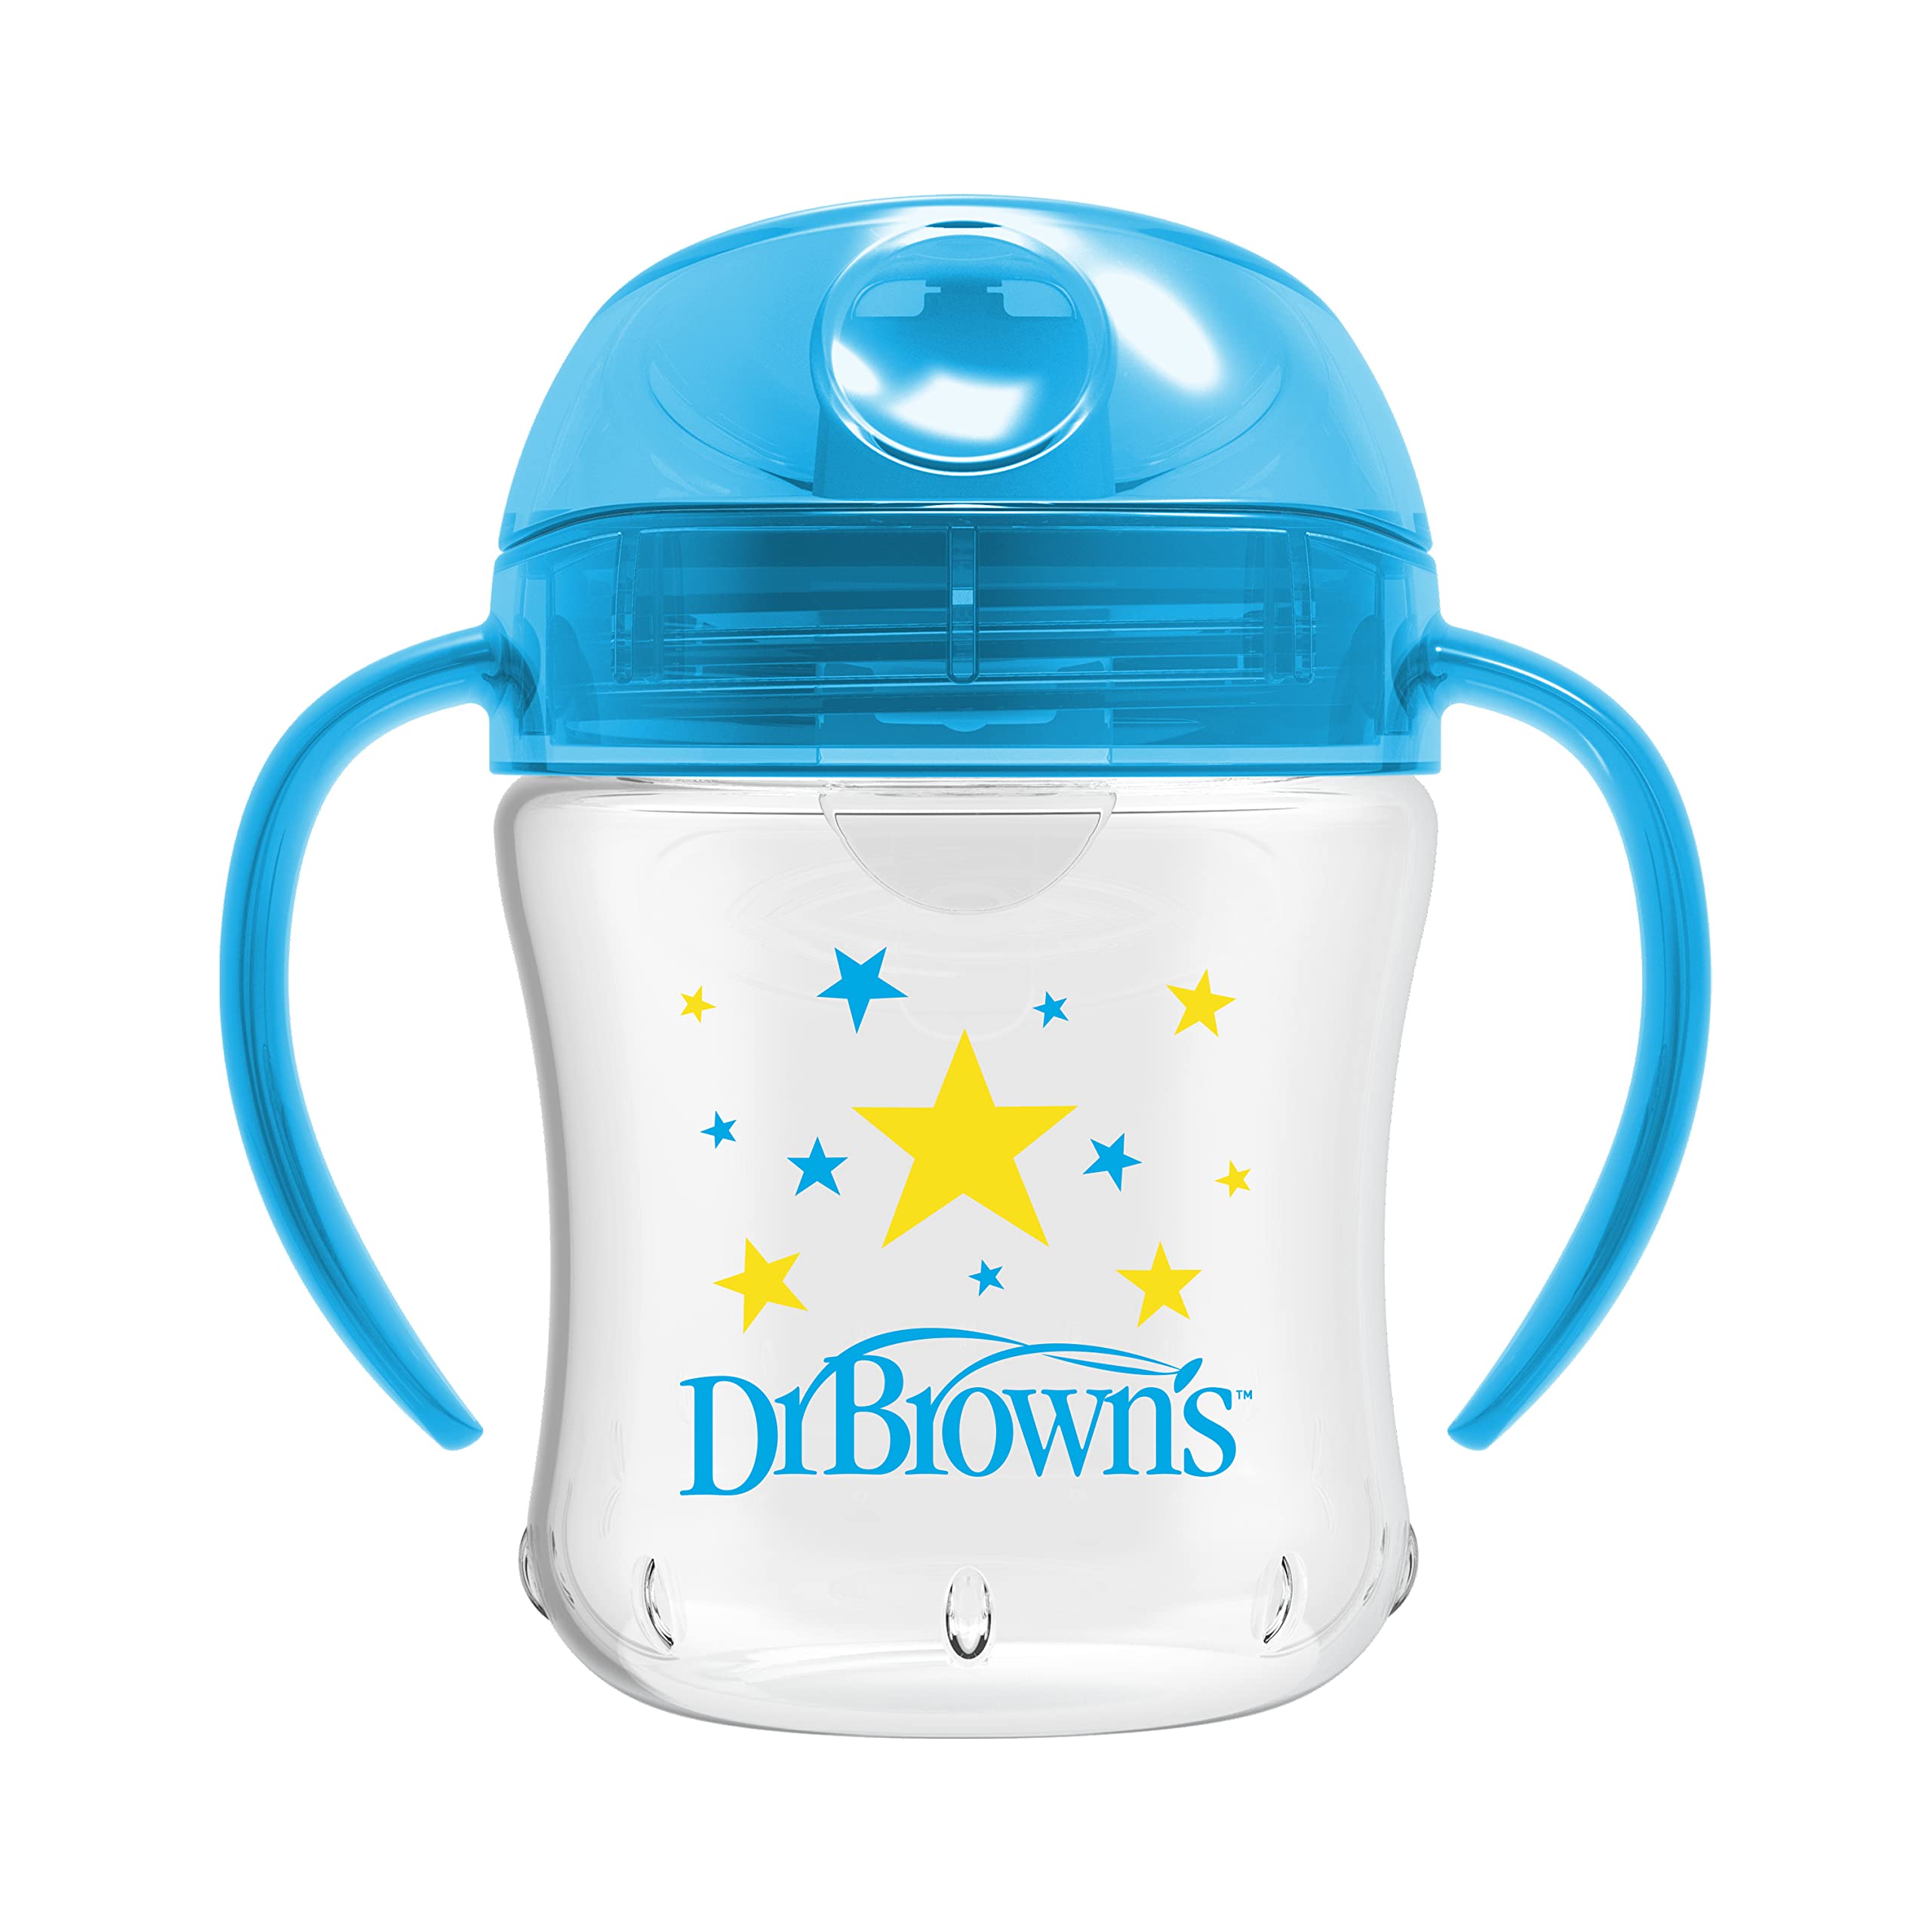 Dr. Brown's Soft-Spout Transition Cup w/ Handles - Blue Deco